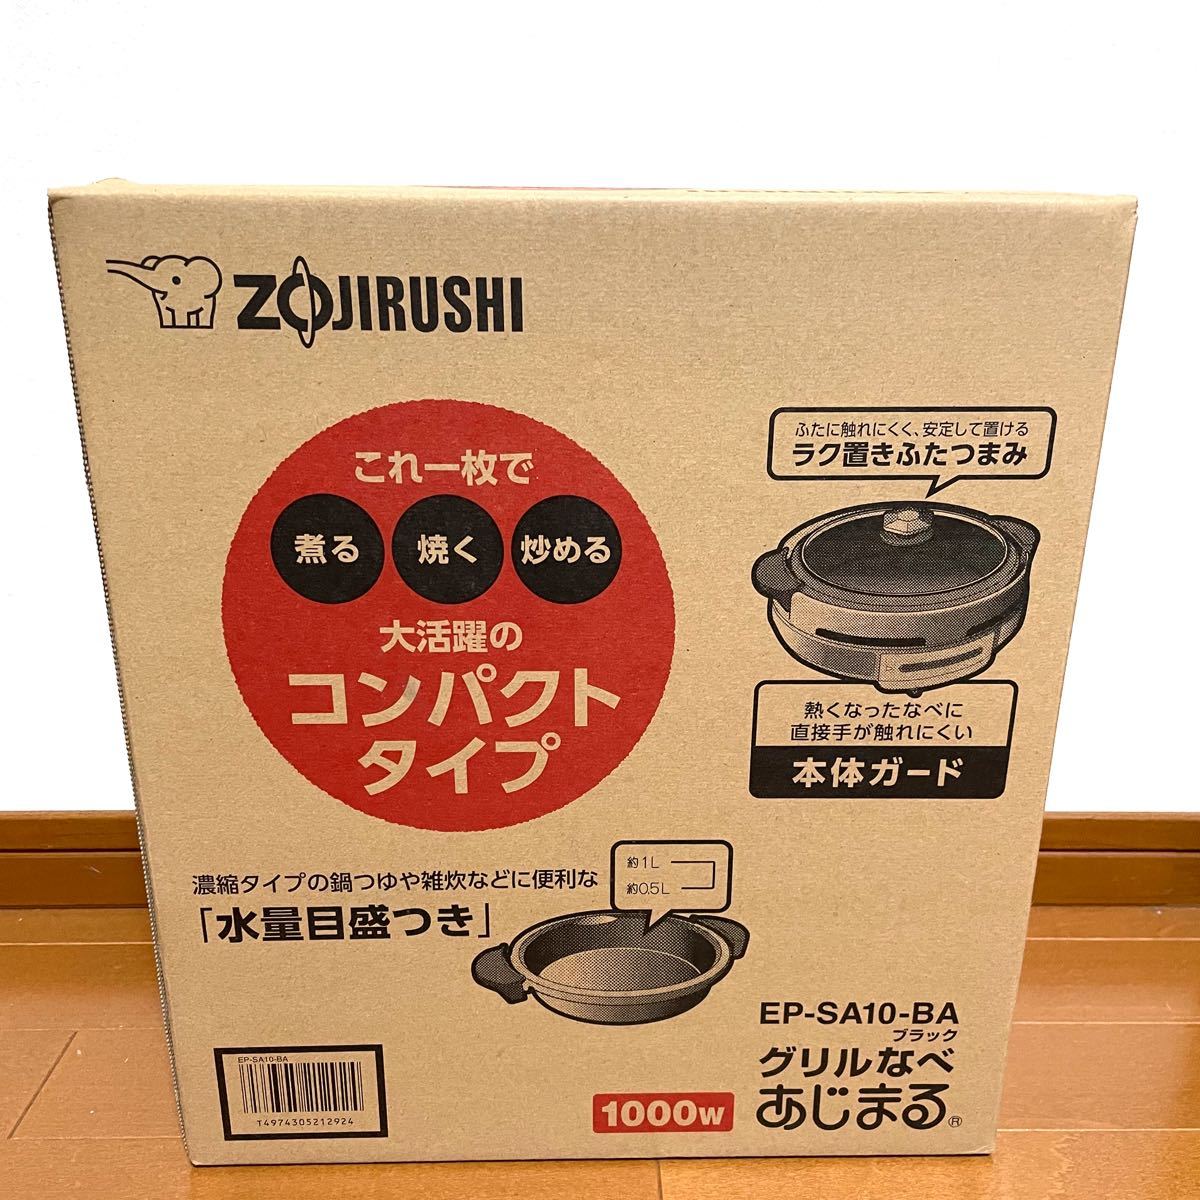 ZOJIRUSHI EP-SA10-BA